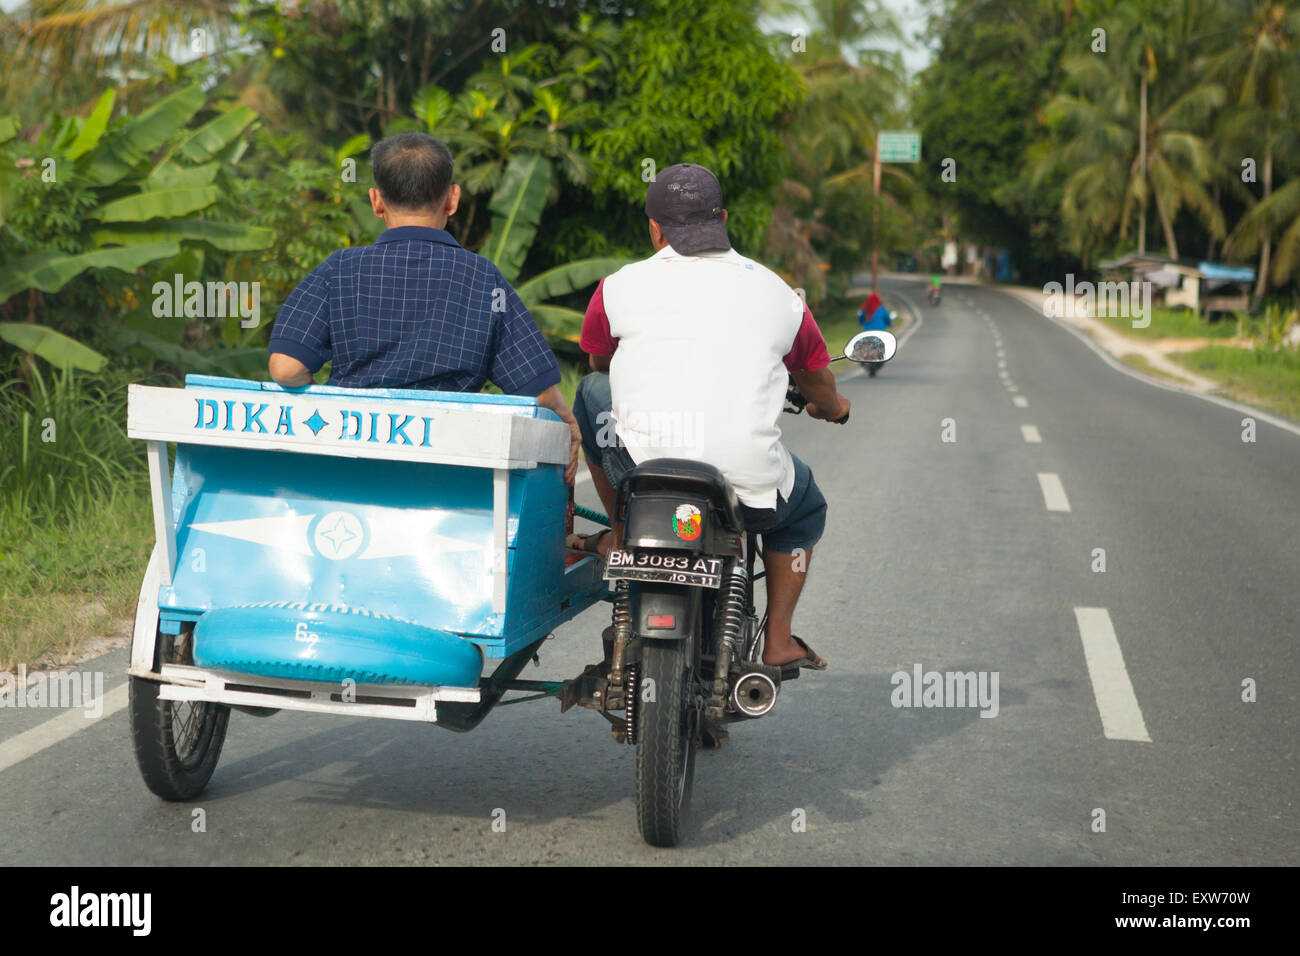 Un automobilista trasporta un passeggero su una motocicletta dotata di sidecar mentre sta guidando su una strada alla periferia di Pekanbaru a Riau, Indonesia. Foto Stock